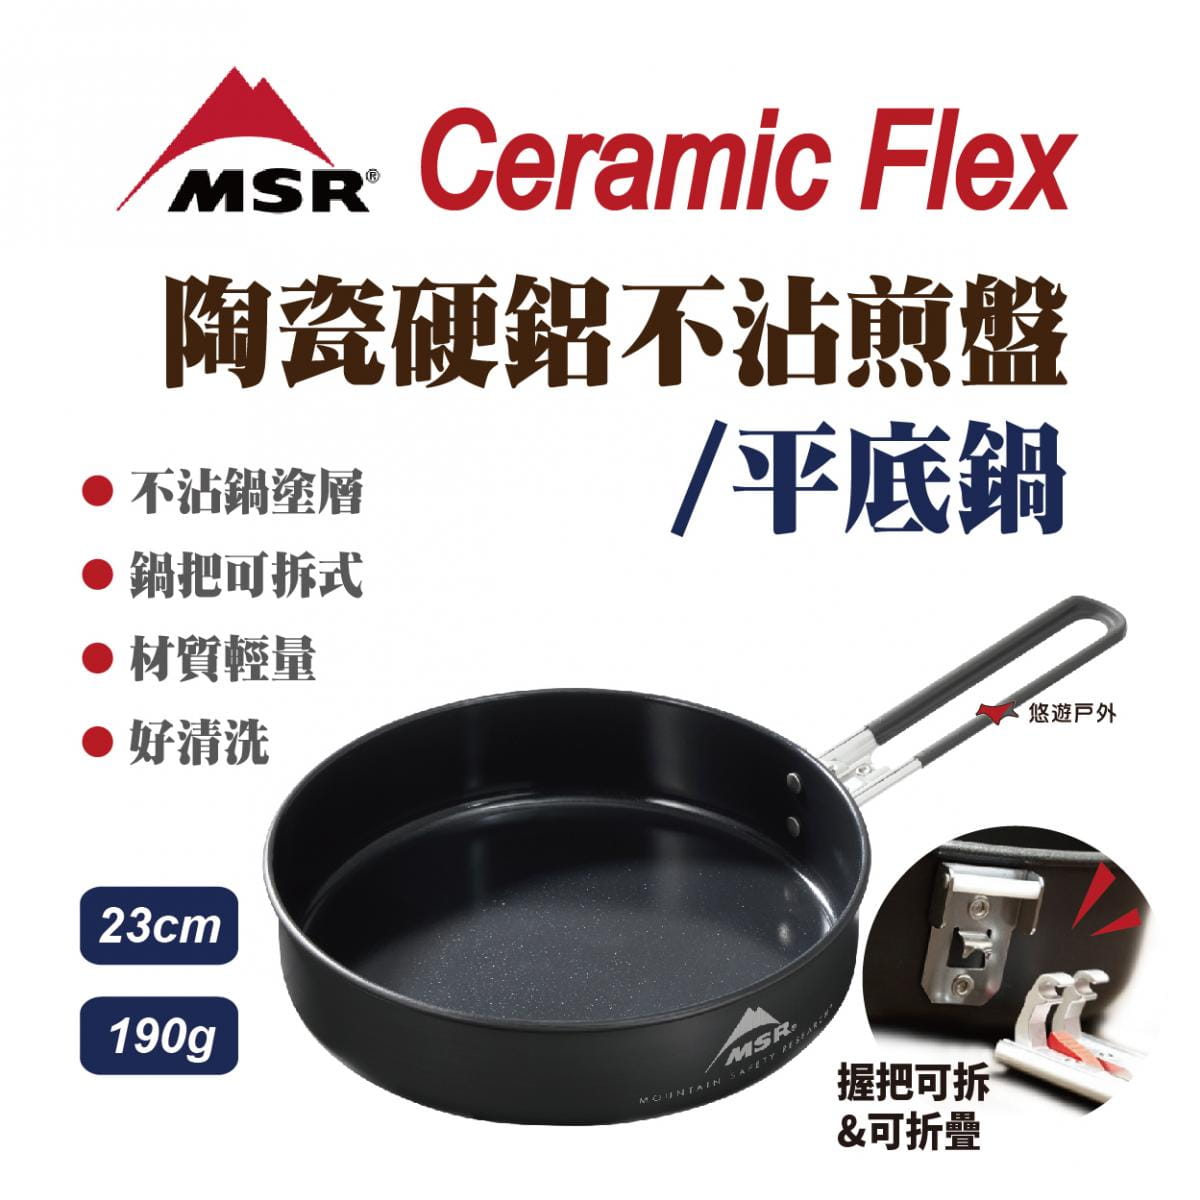 【MSR】美國 13233 Ceramic Flex 陶瓷硬鋁不沾煎盤 平底鍋 23cm 登山露營 0